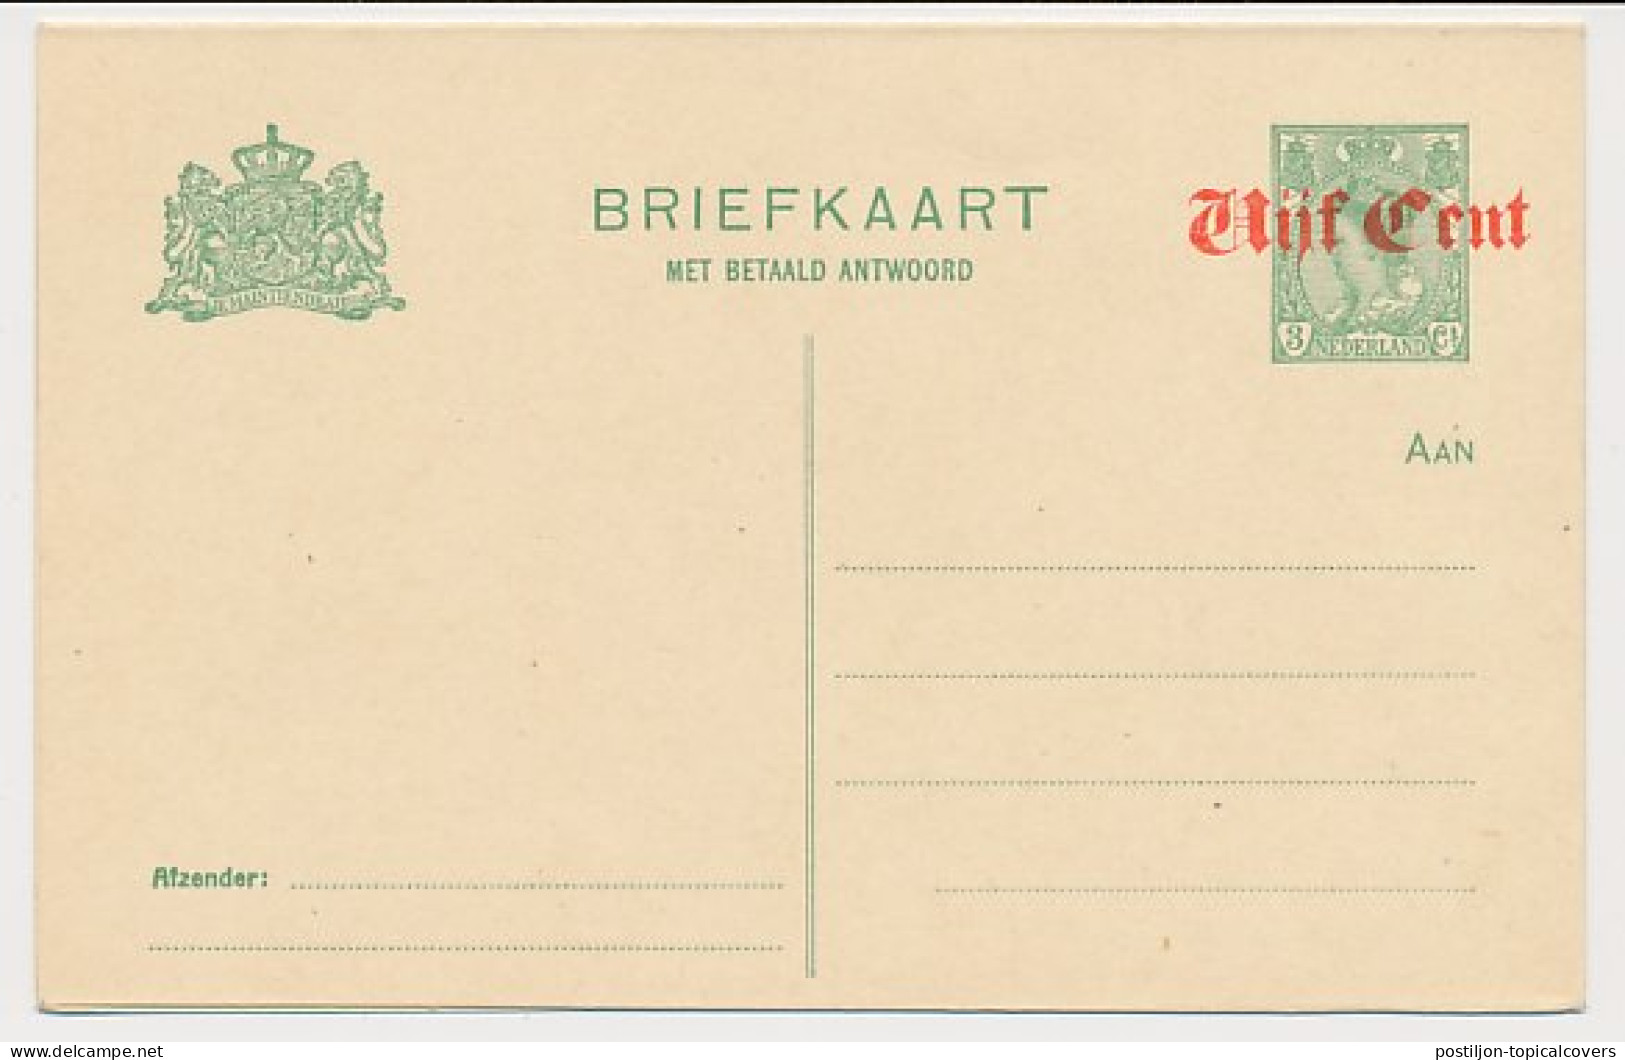 Briefkaart G. 115 - Ganzsachen